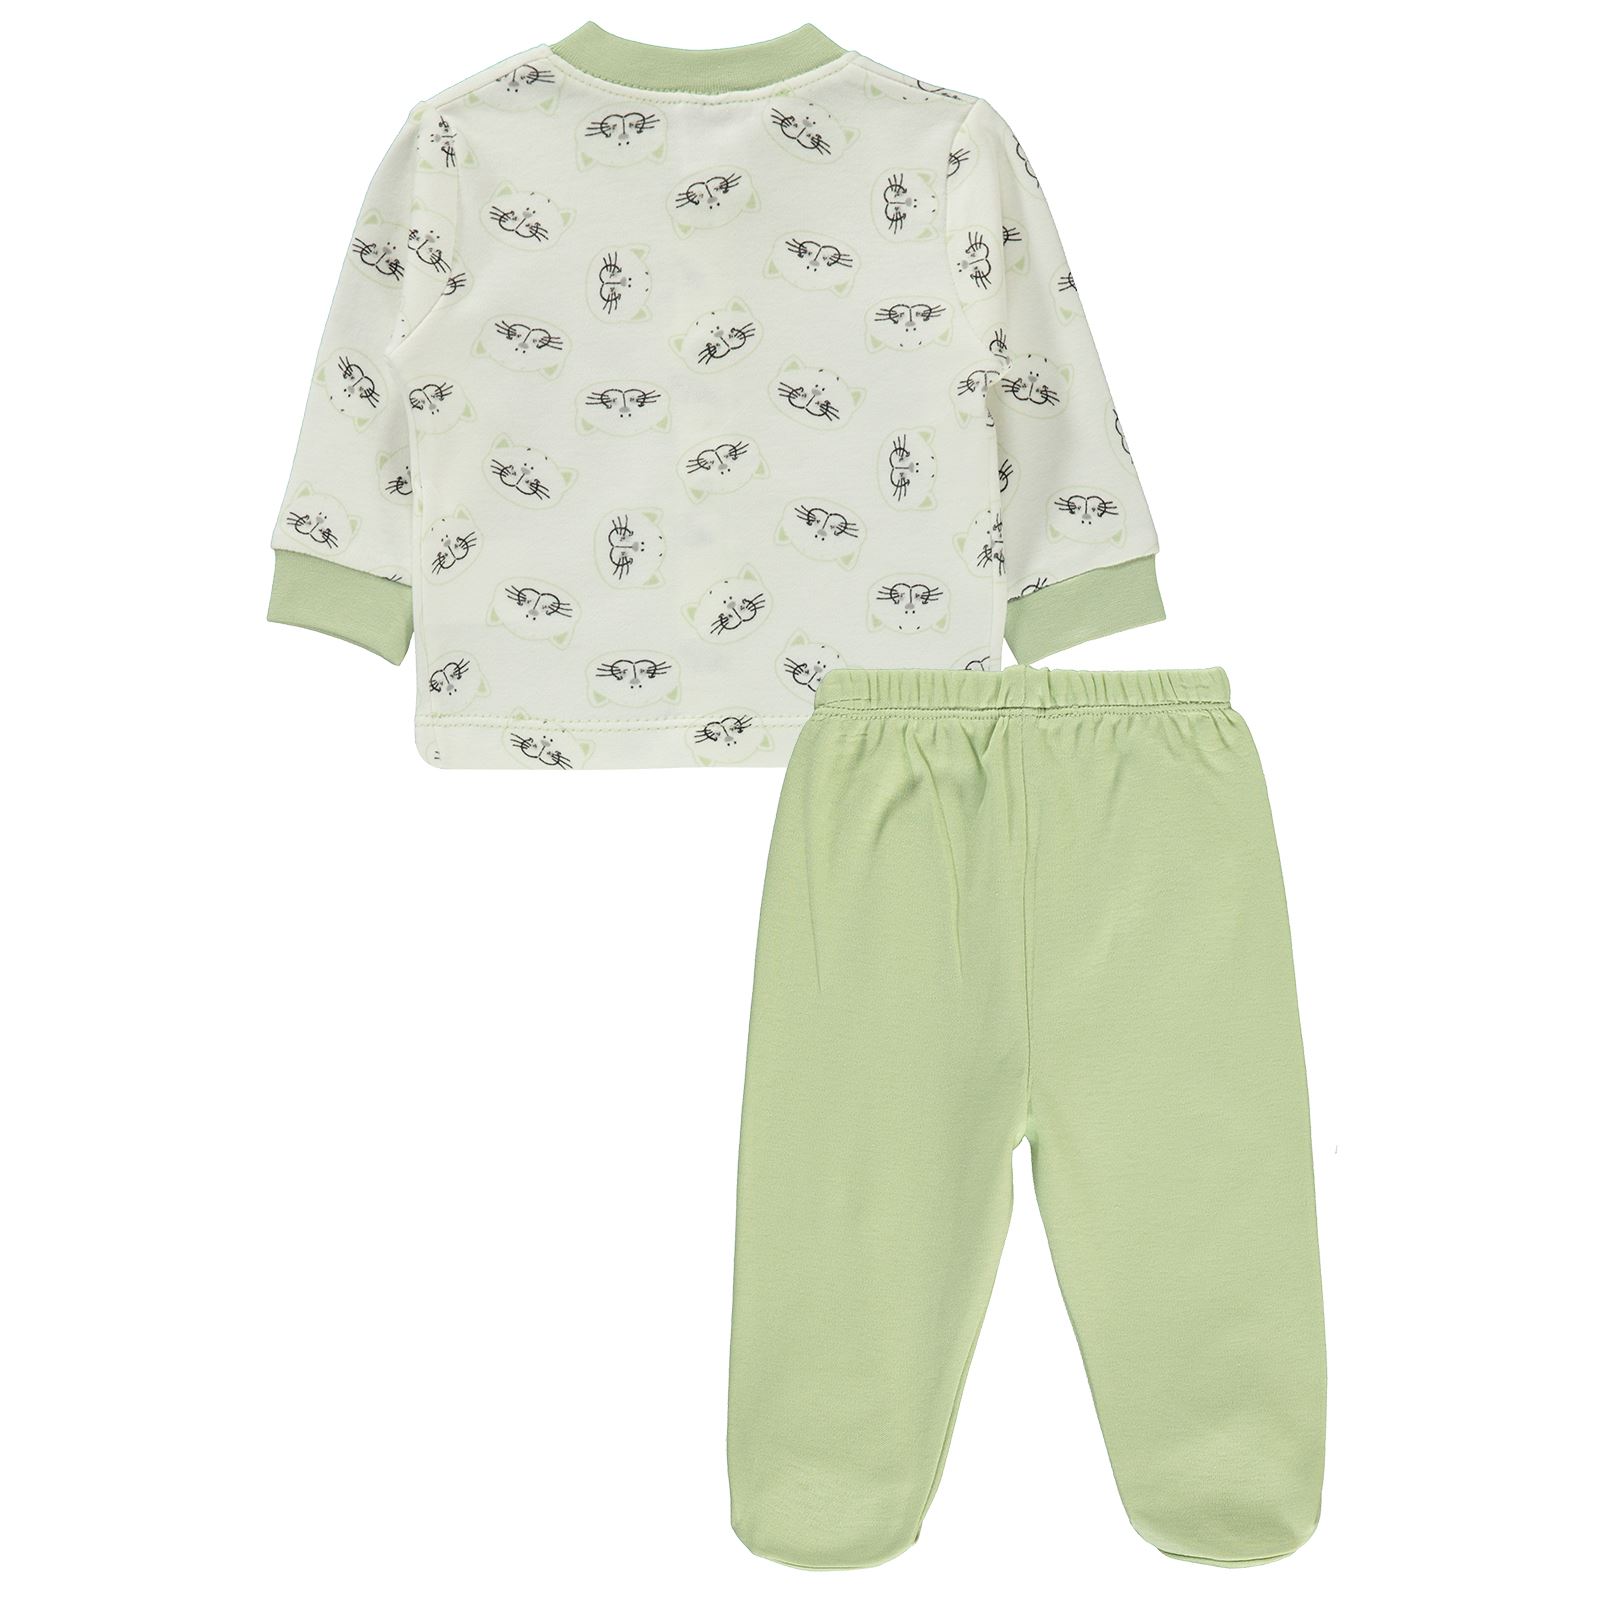 Misket Erkek Bebek Pijama Takımı 0-6 Ay Yeşil